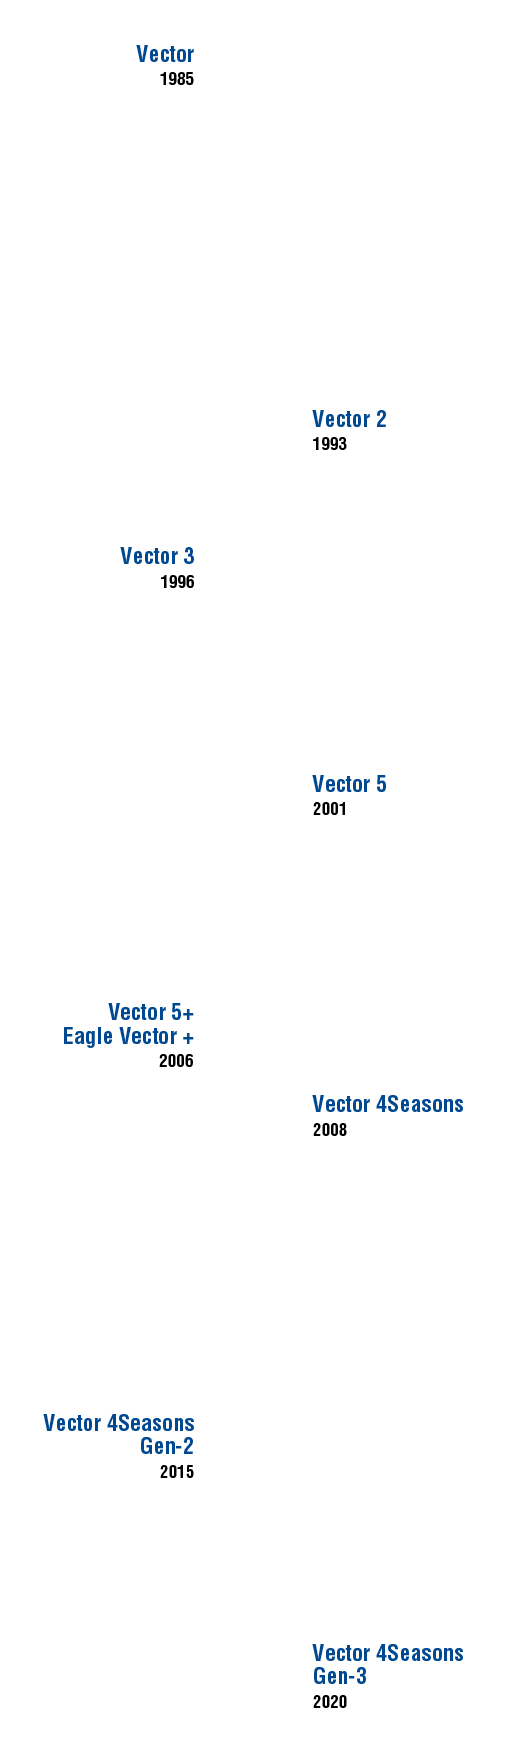 vector 4seasons models timeline